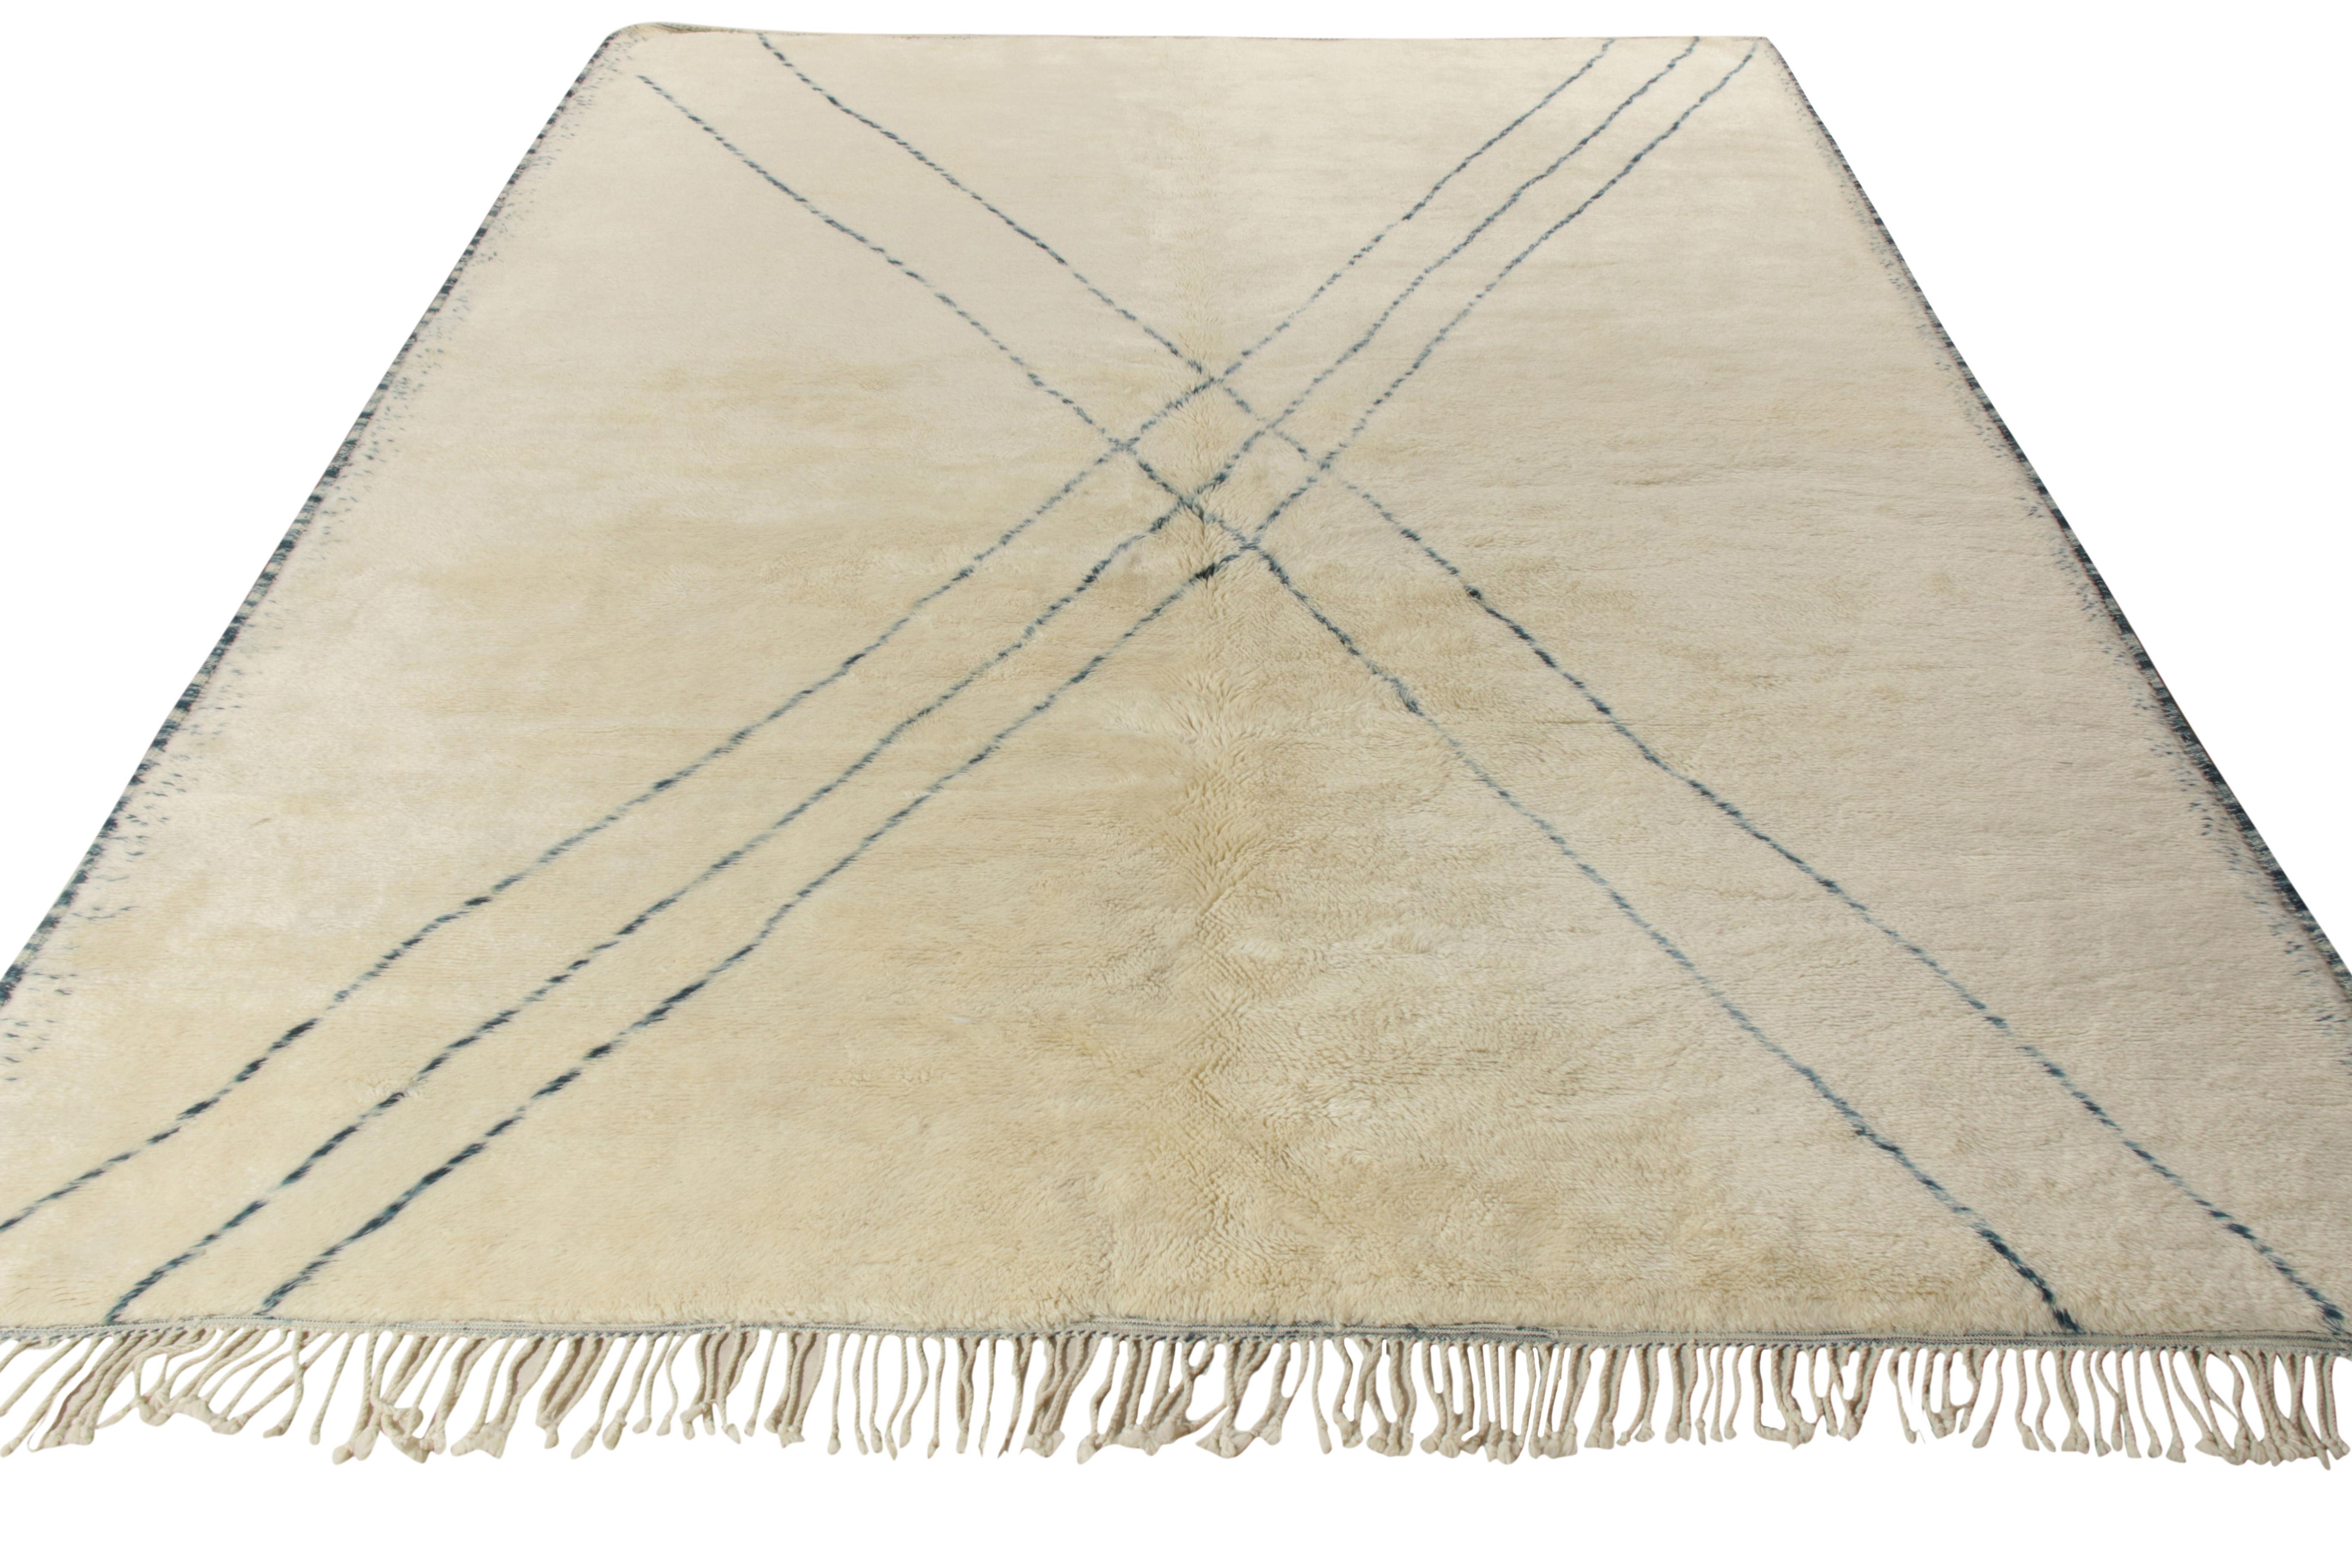 Dieses 10x13 große Stück aus luxuriösem Qualitätsgarn wurde von Hand geknüpft und gehört zu den modernen Ergänzungen der marokkanischen Teppichkollektion von Rug & Kilim. Während das Feld in der Üppigkeit eines cremefarbenen Beige-Weiß erblüht,